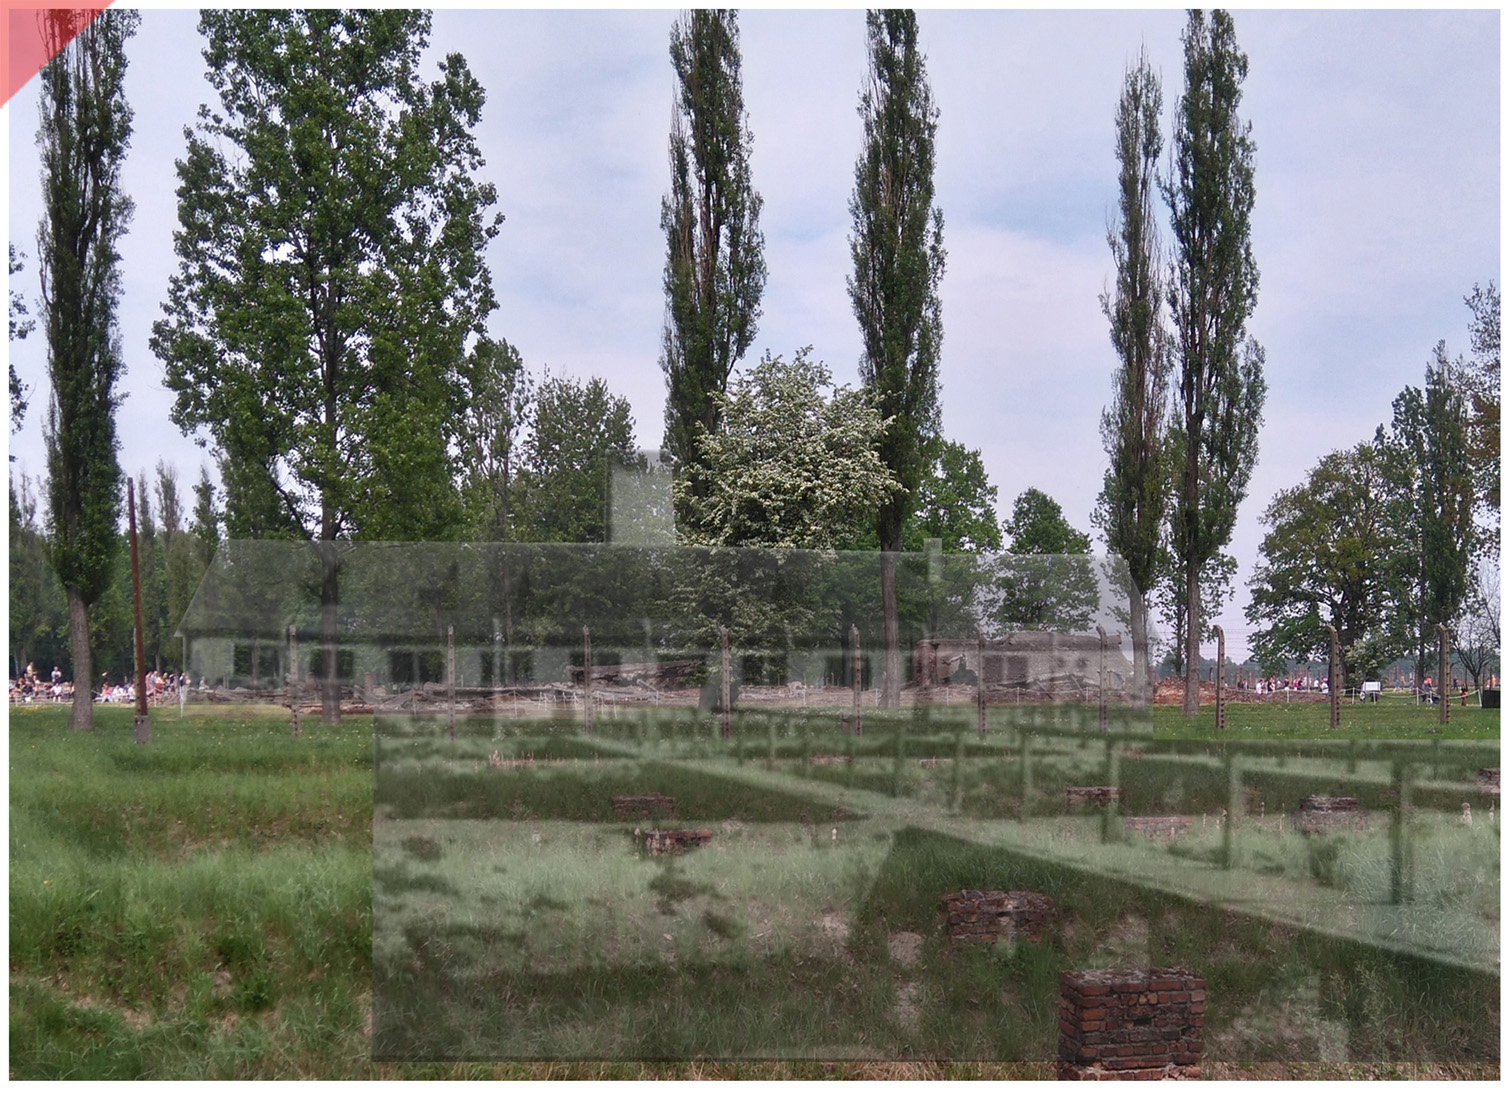 Auschwitz-Birkenau-Krematorium-2-II-superimpose-now-then-1943-1944-Photo